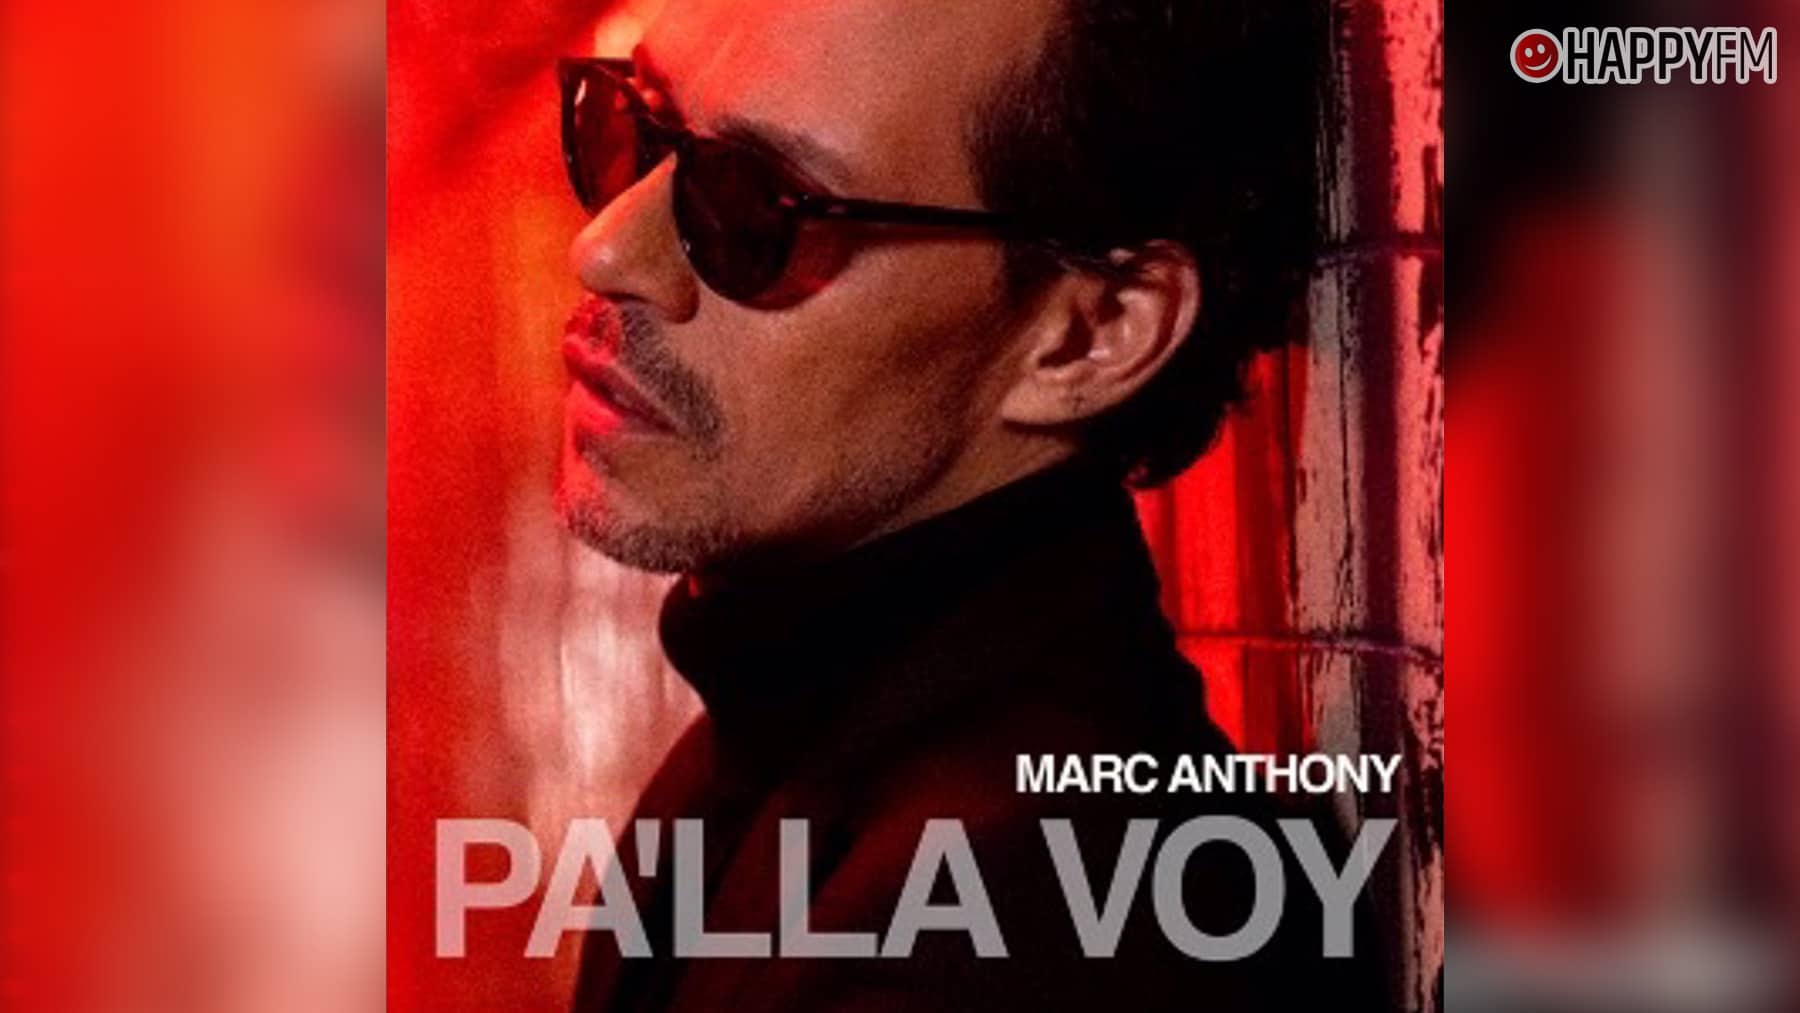 Marc Anthony: análisis, canción a canción, del álbum ‘Pa’lla voy’ loading=